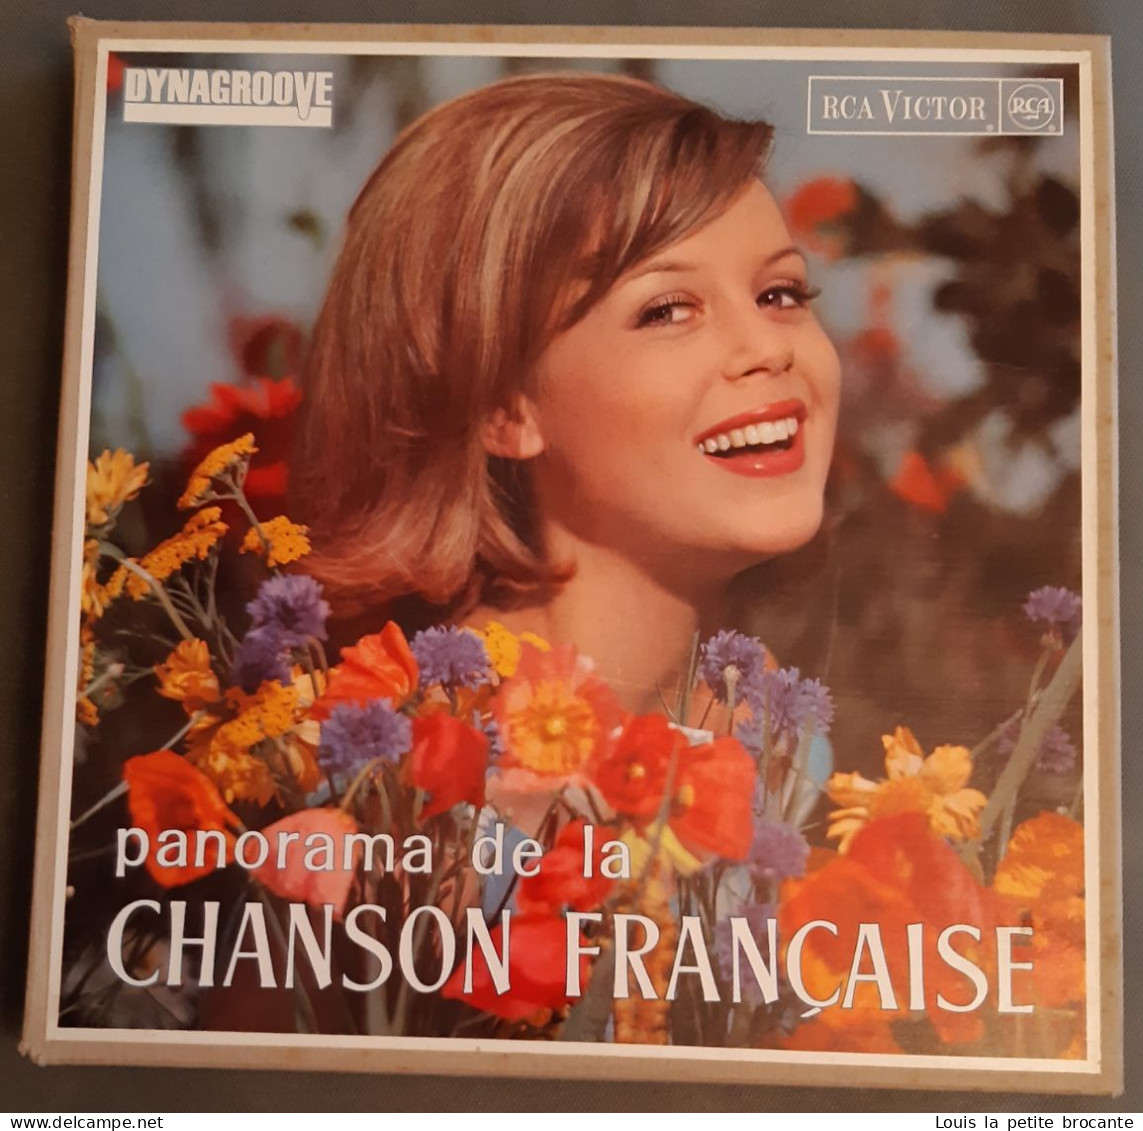 Coffret De 10 Disques Vinyles, PANORAMA DE LA CHANSON FRANCAISE - DINAGROOVE - RCA VICTOR 1964, 1 Chanson Rayée - Complete Collections